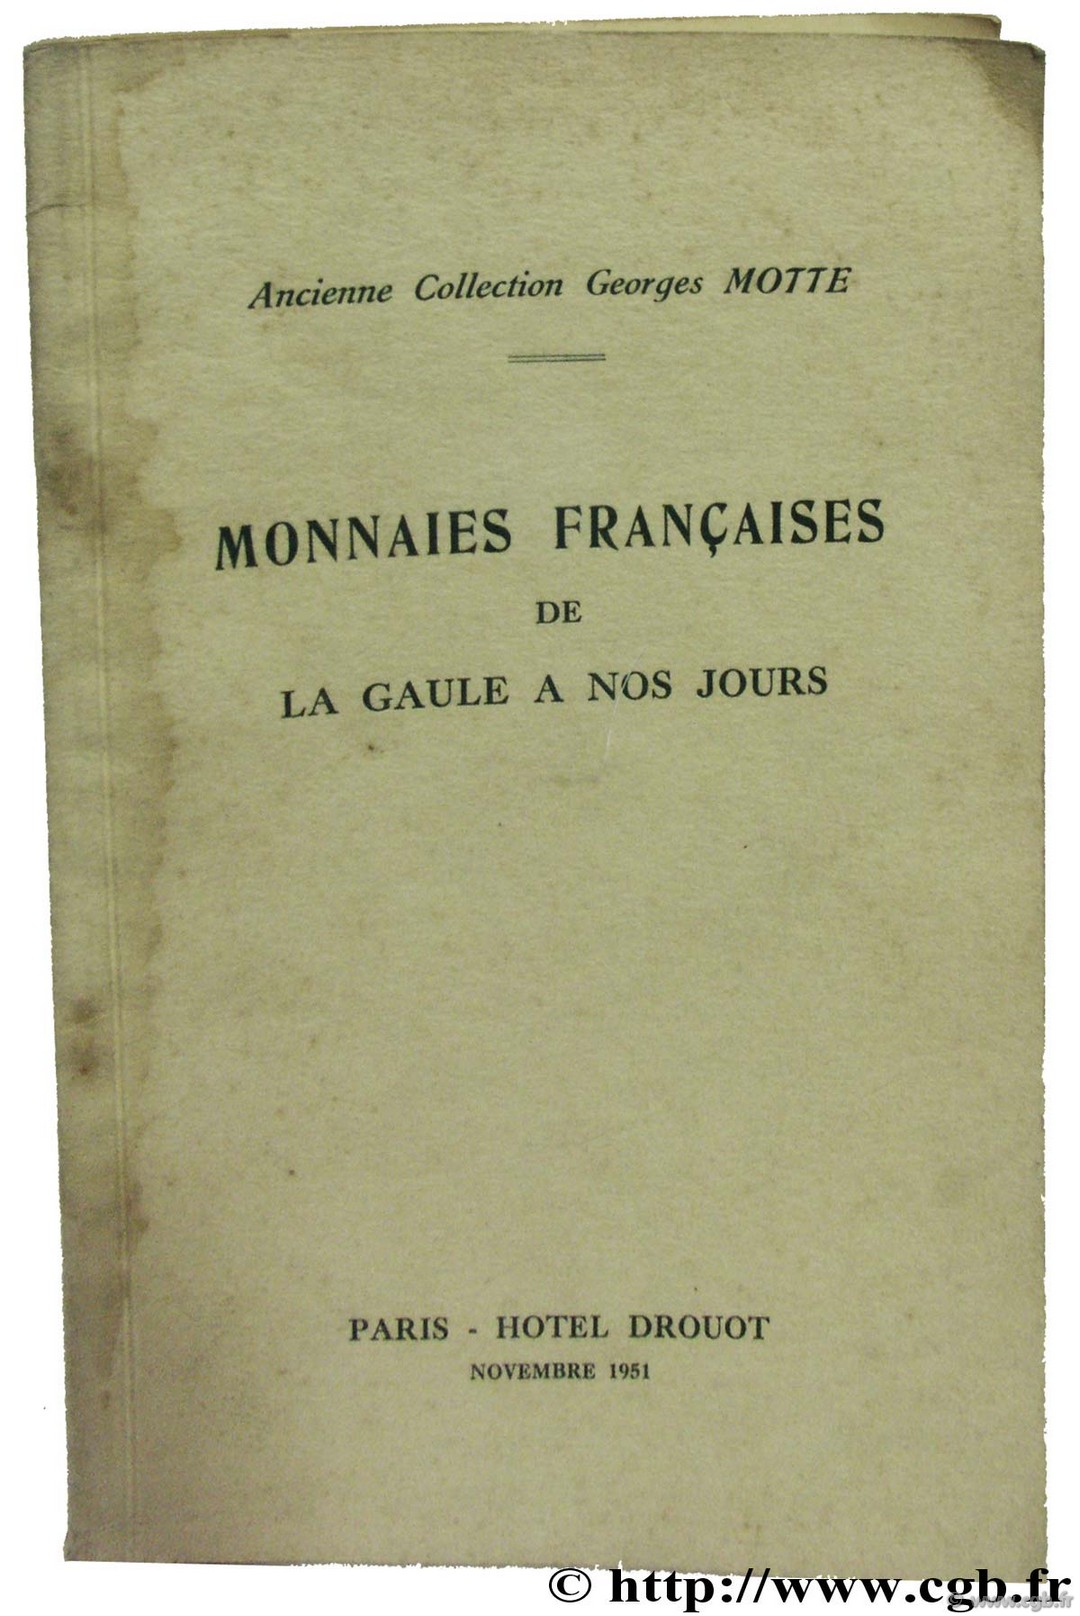 Monnaies Françaises de la Gaule à nos jours - Collection Georges Motte BOURGEY É.